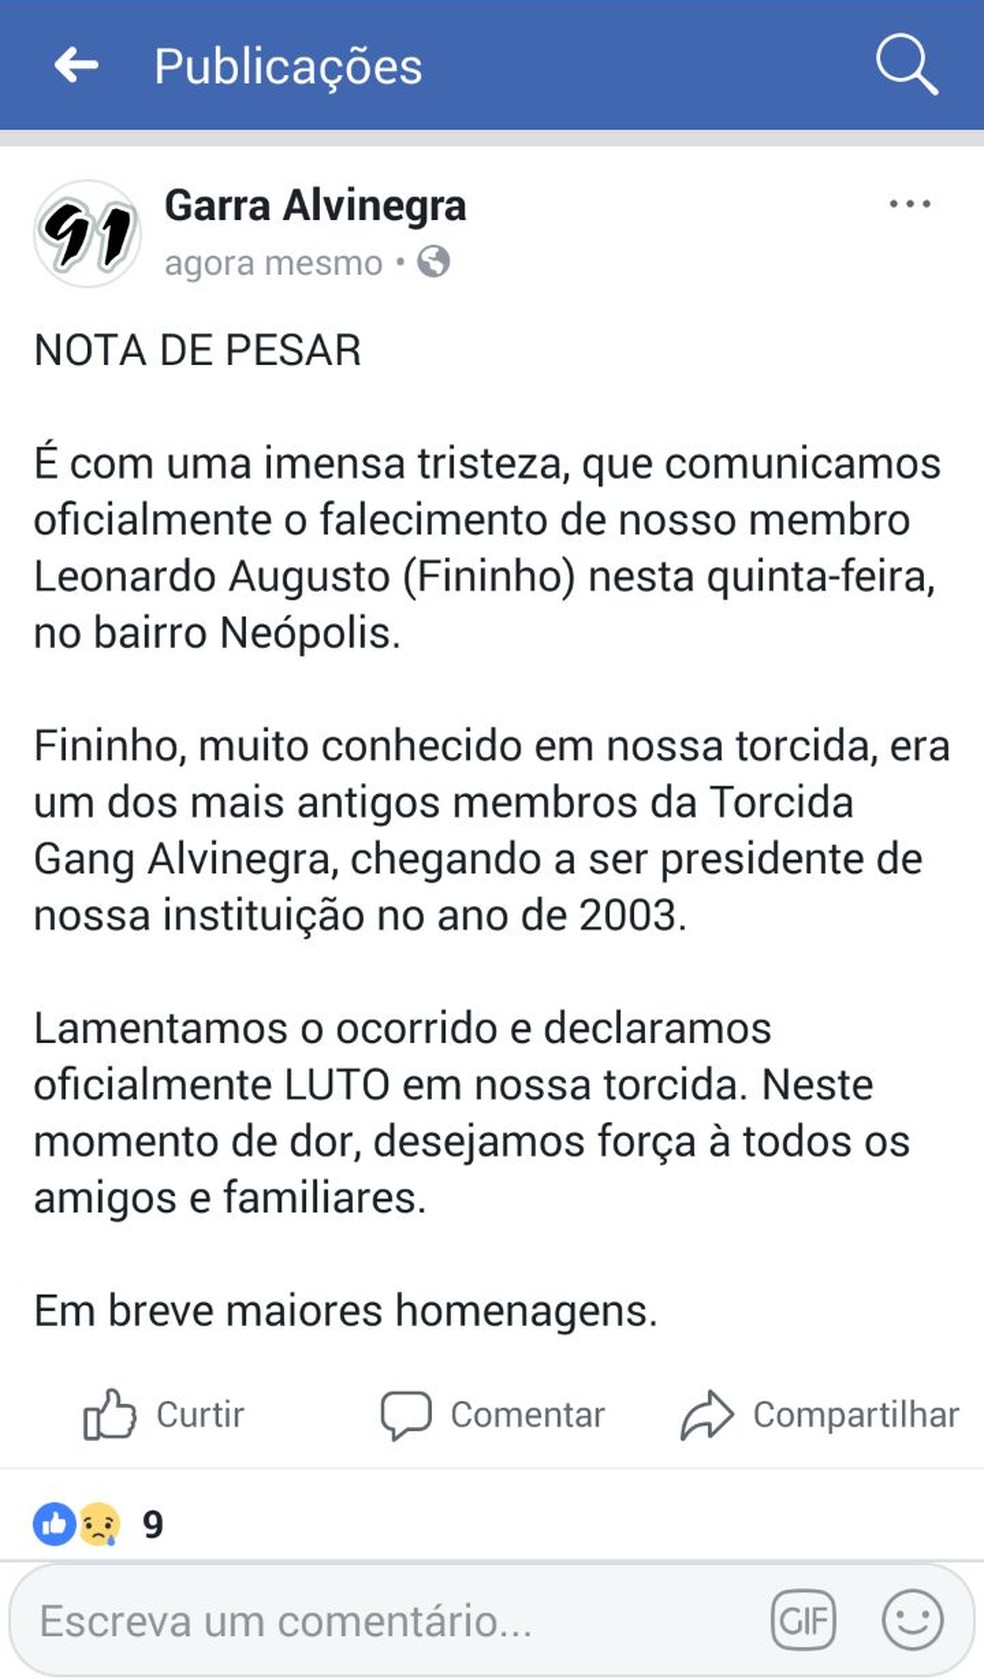 Torcida Garra Alvinegra divulgou nota de pesar no Facebook pelo assassinato do torcedor 'Fininho' em Natal (Foto: Facebook/Reprodução)